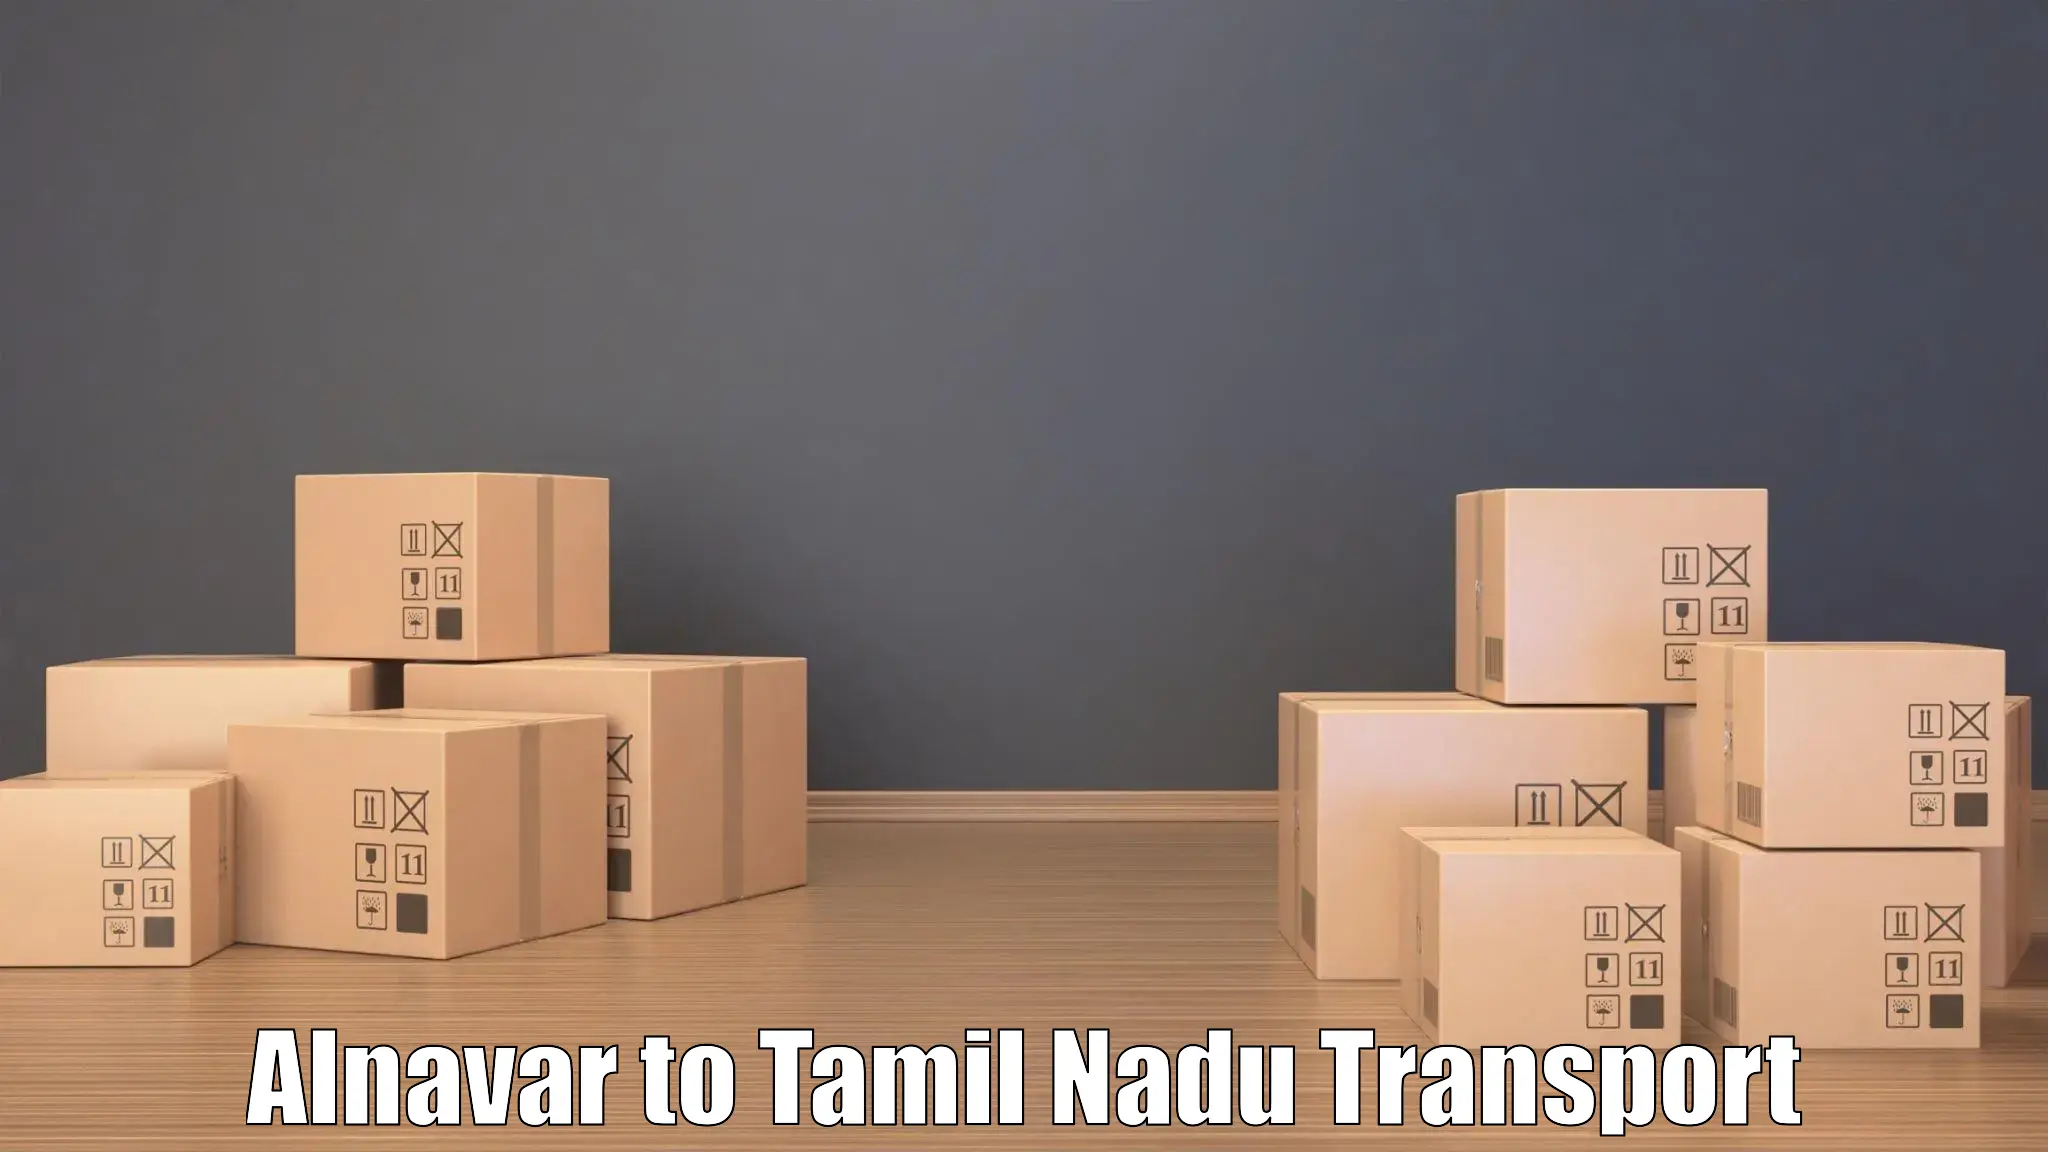 Cargo train transport services Alnavar to IIIT Tiruchirappalli